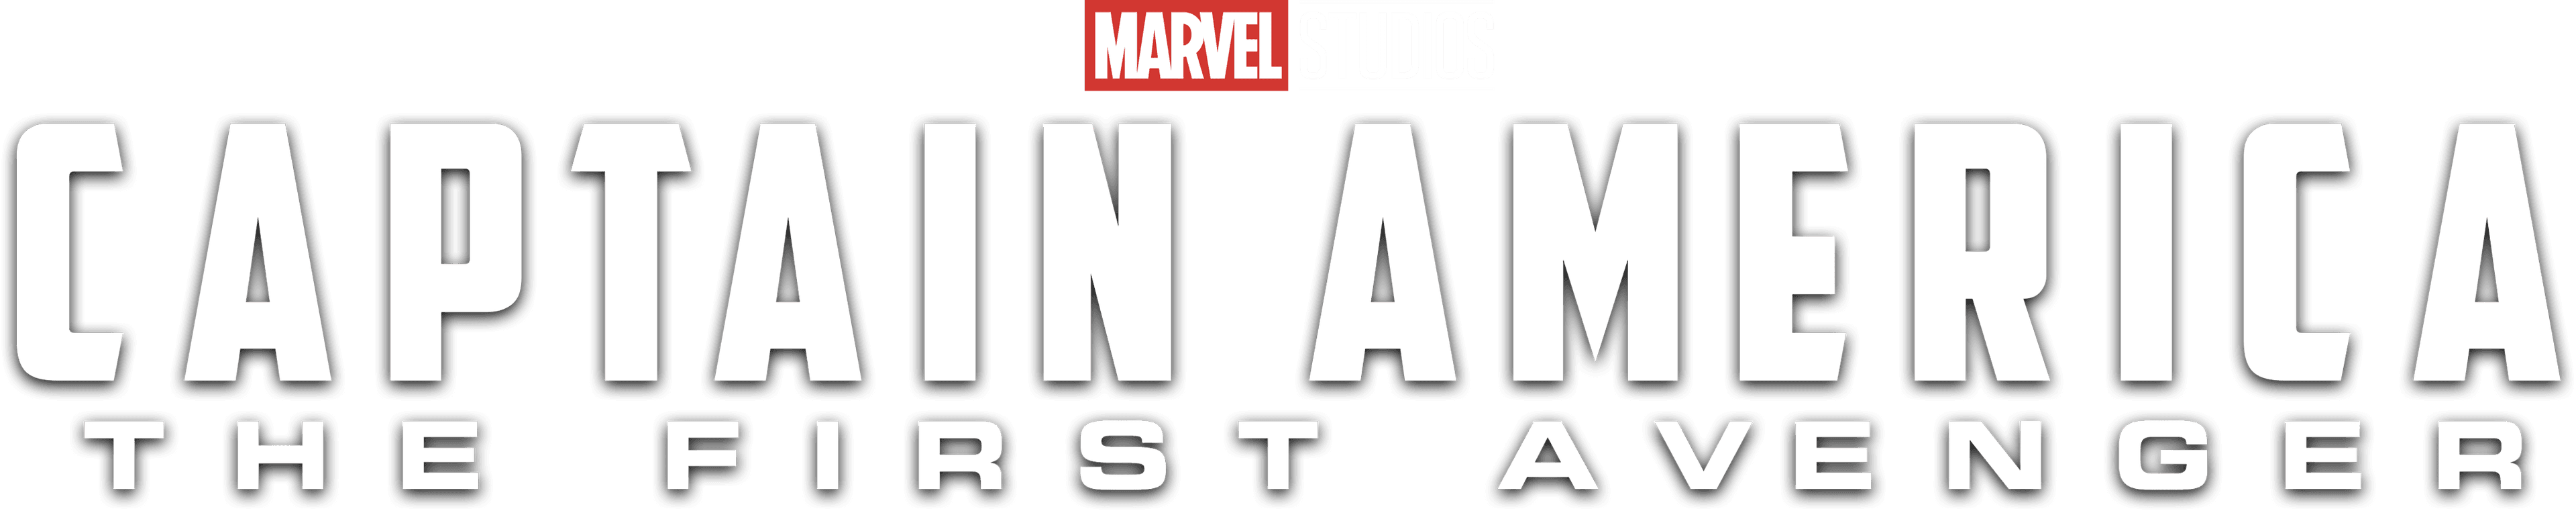 Captain America: The First Avenger logo